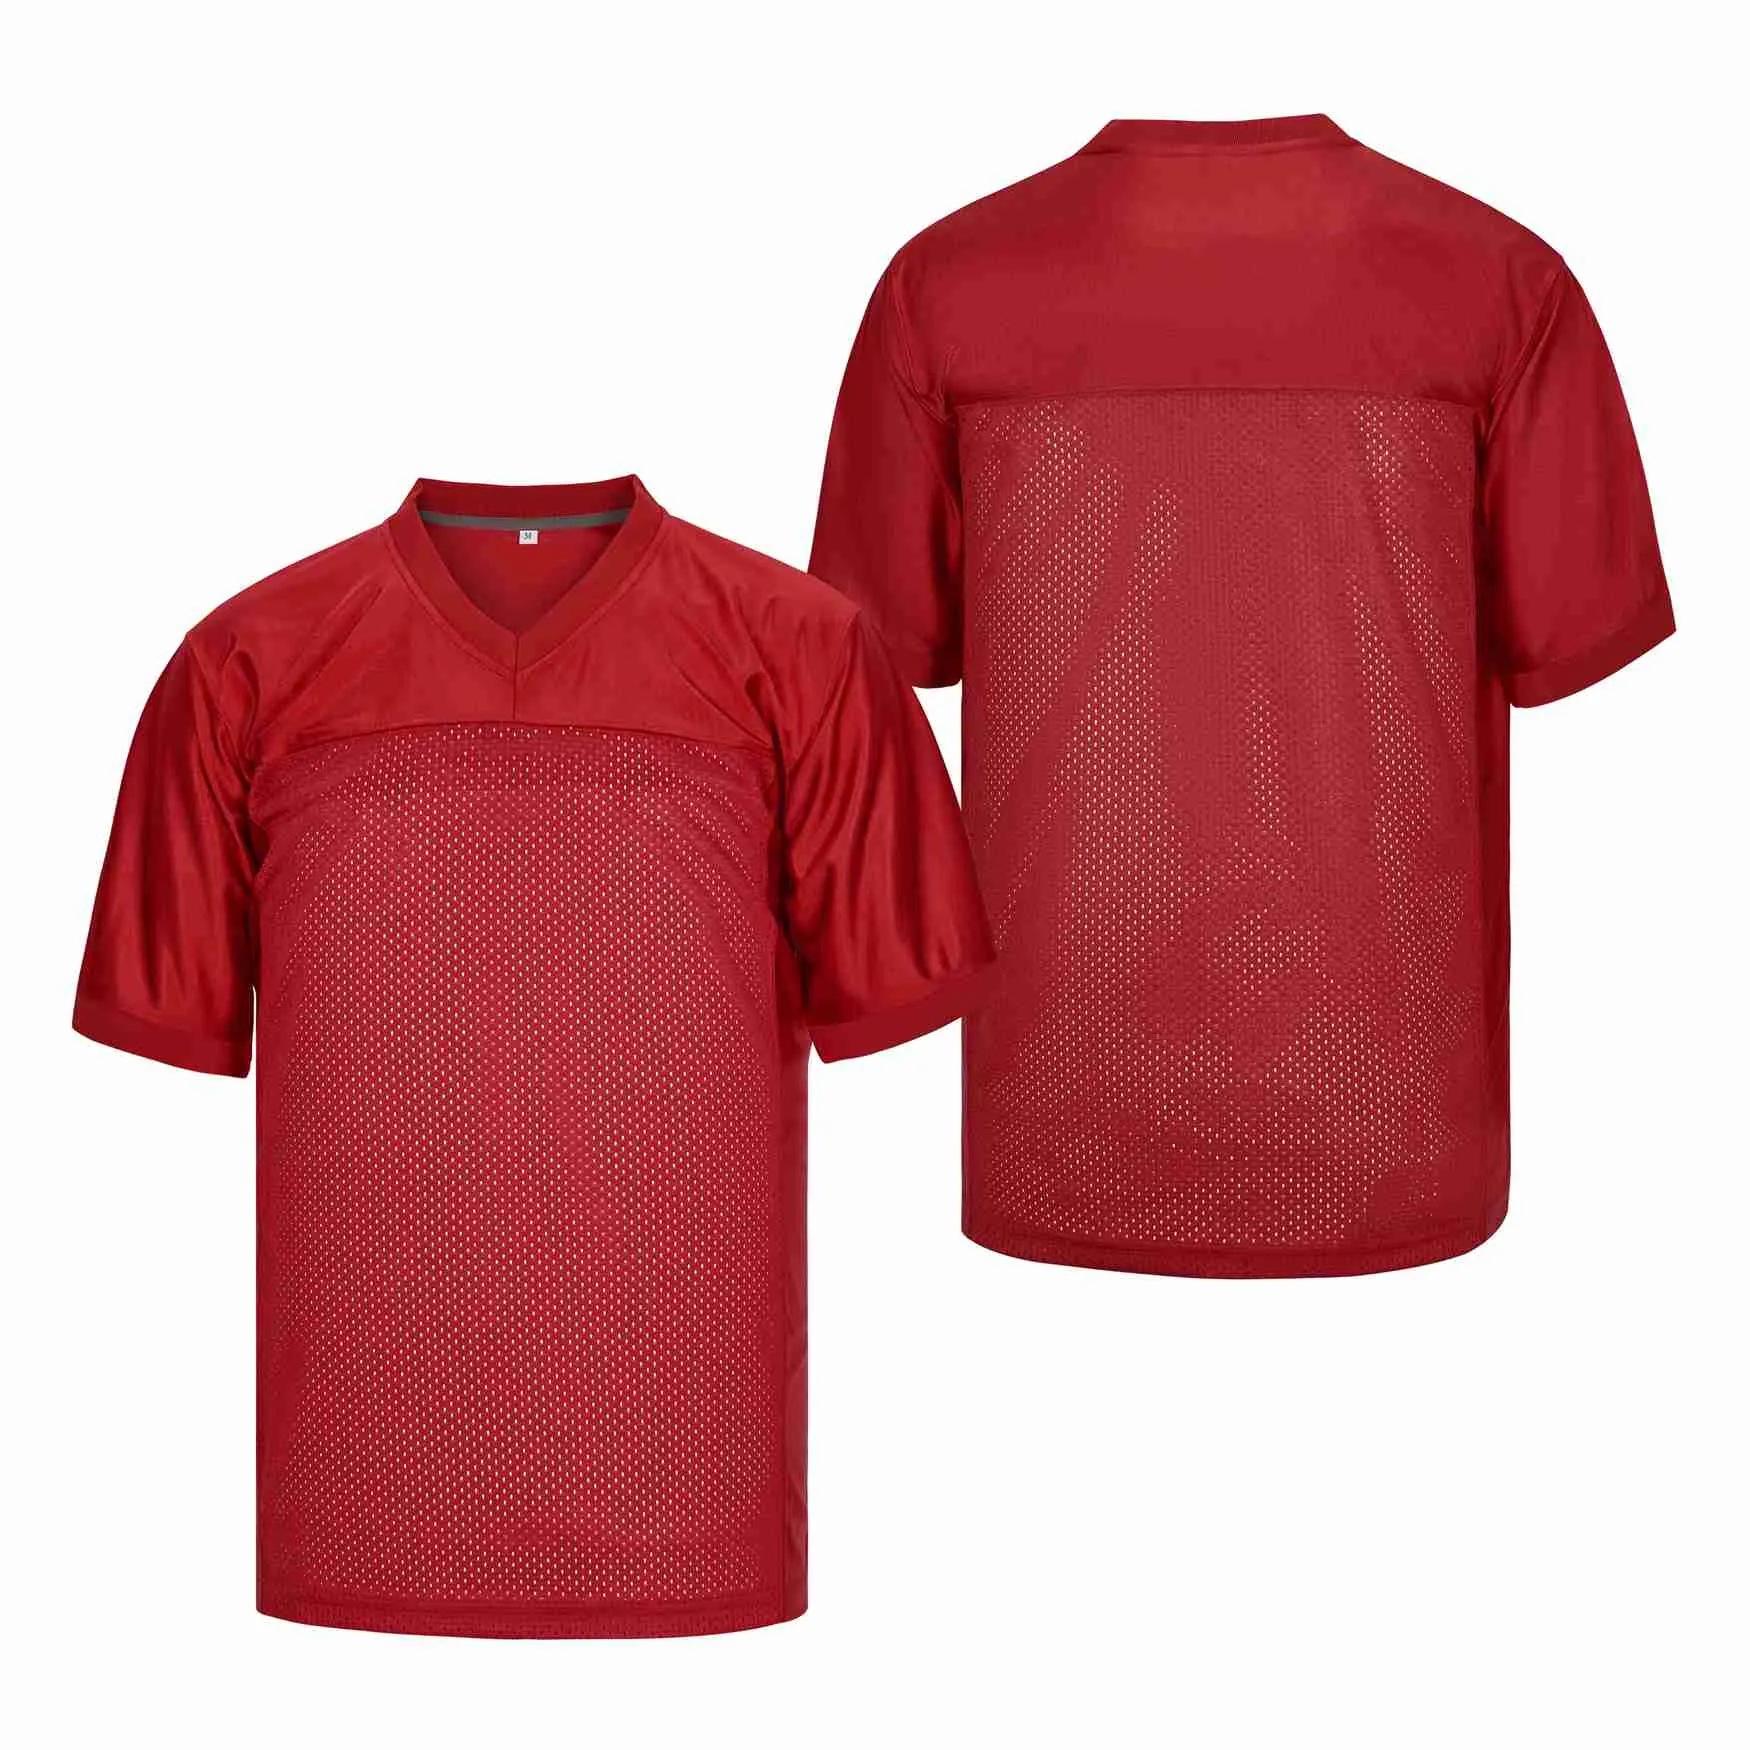 Niestandardowy purpurowy czerwony autentyczny numer nazwy koszulki piłkarskiej